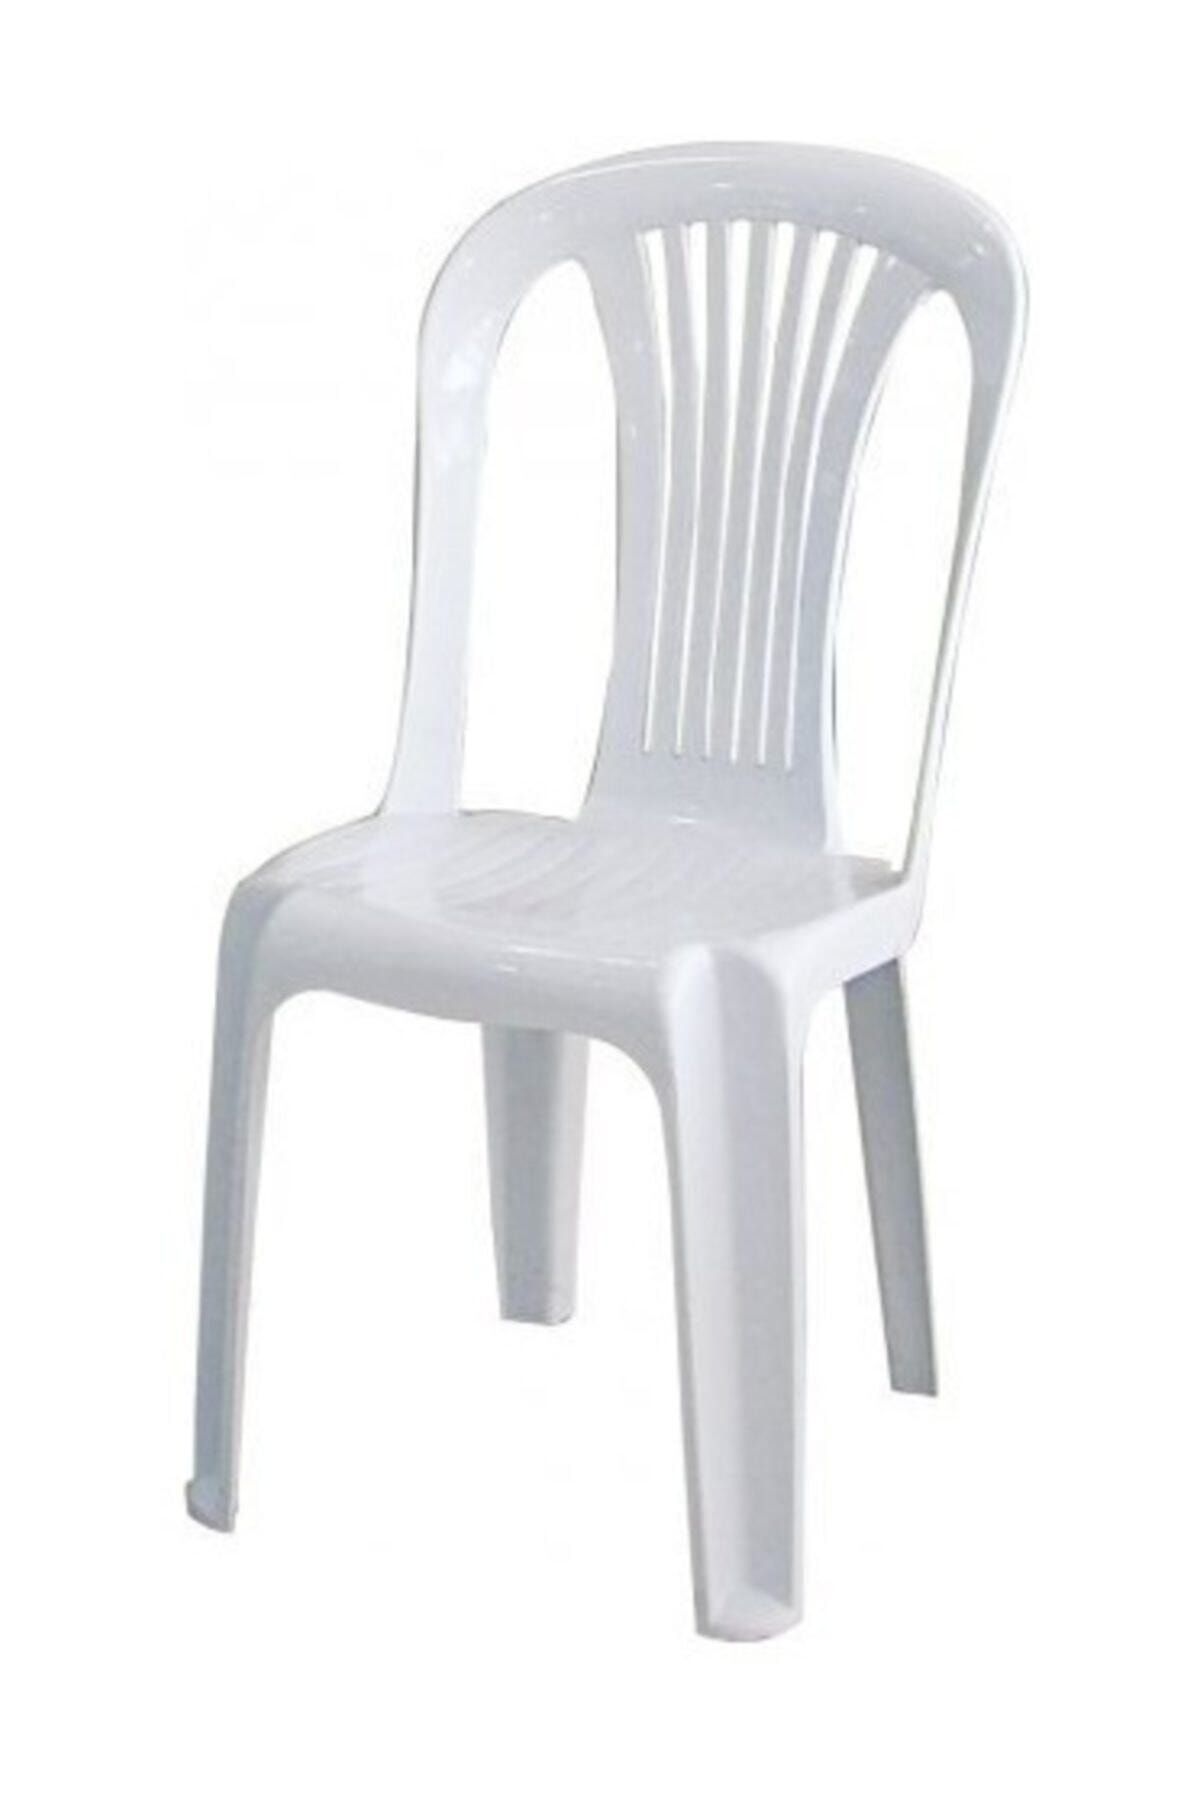 3A Mobilya 4 Adet Gardelia Plastik Sandalye Lüx Kolsuz Plastik Sandalye (kırık Beyaz)